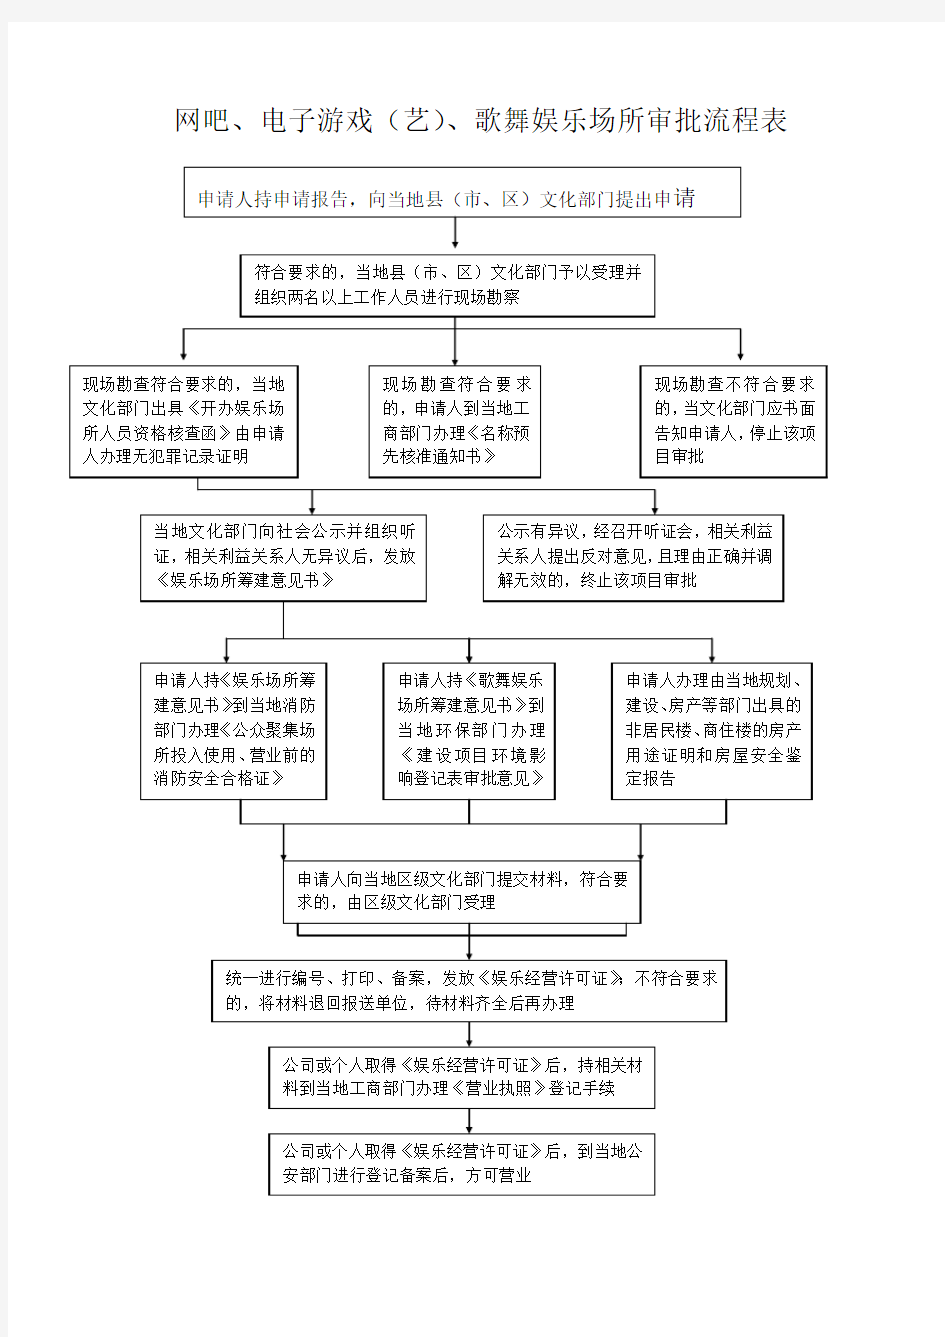 文广局行政审批流程图